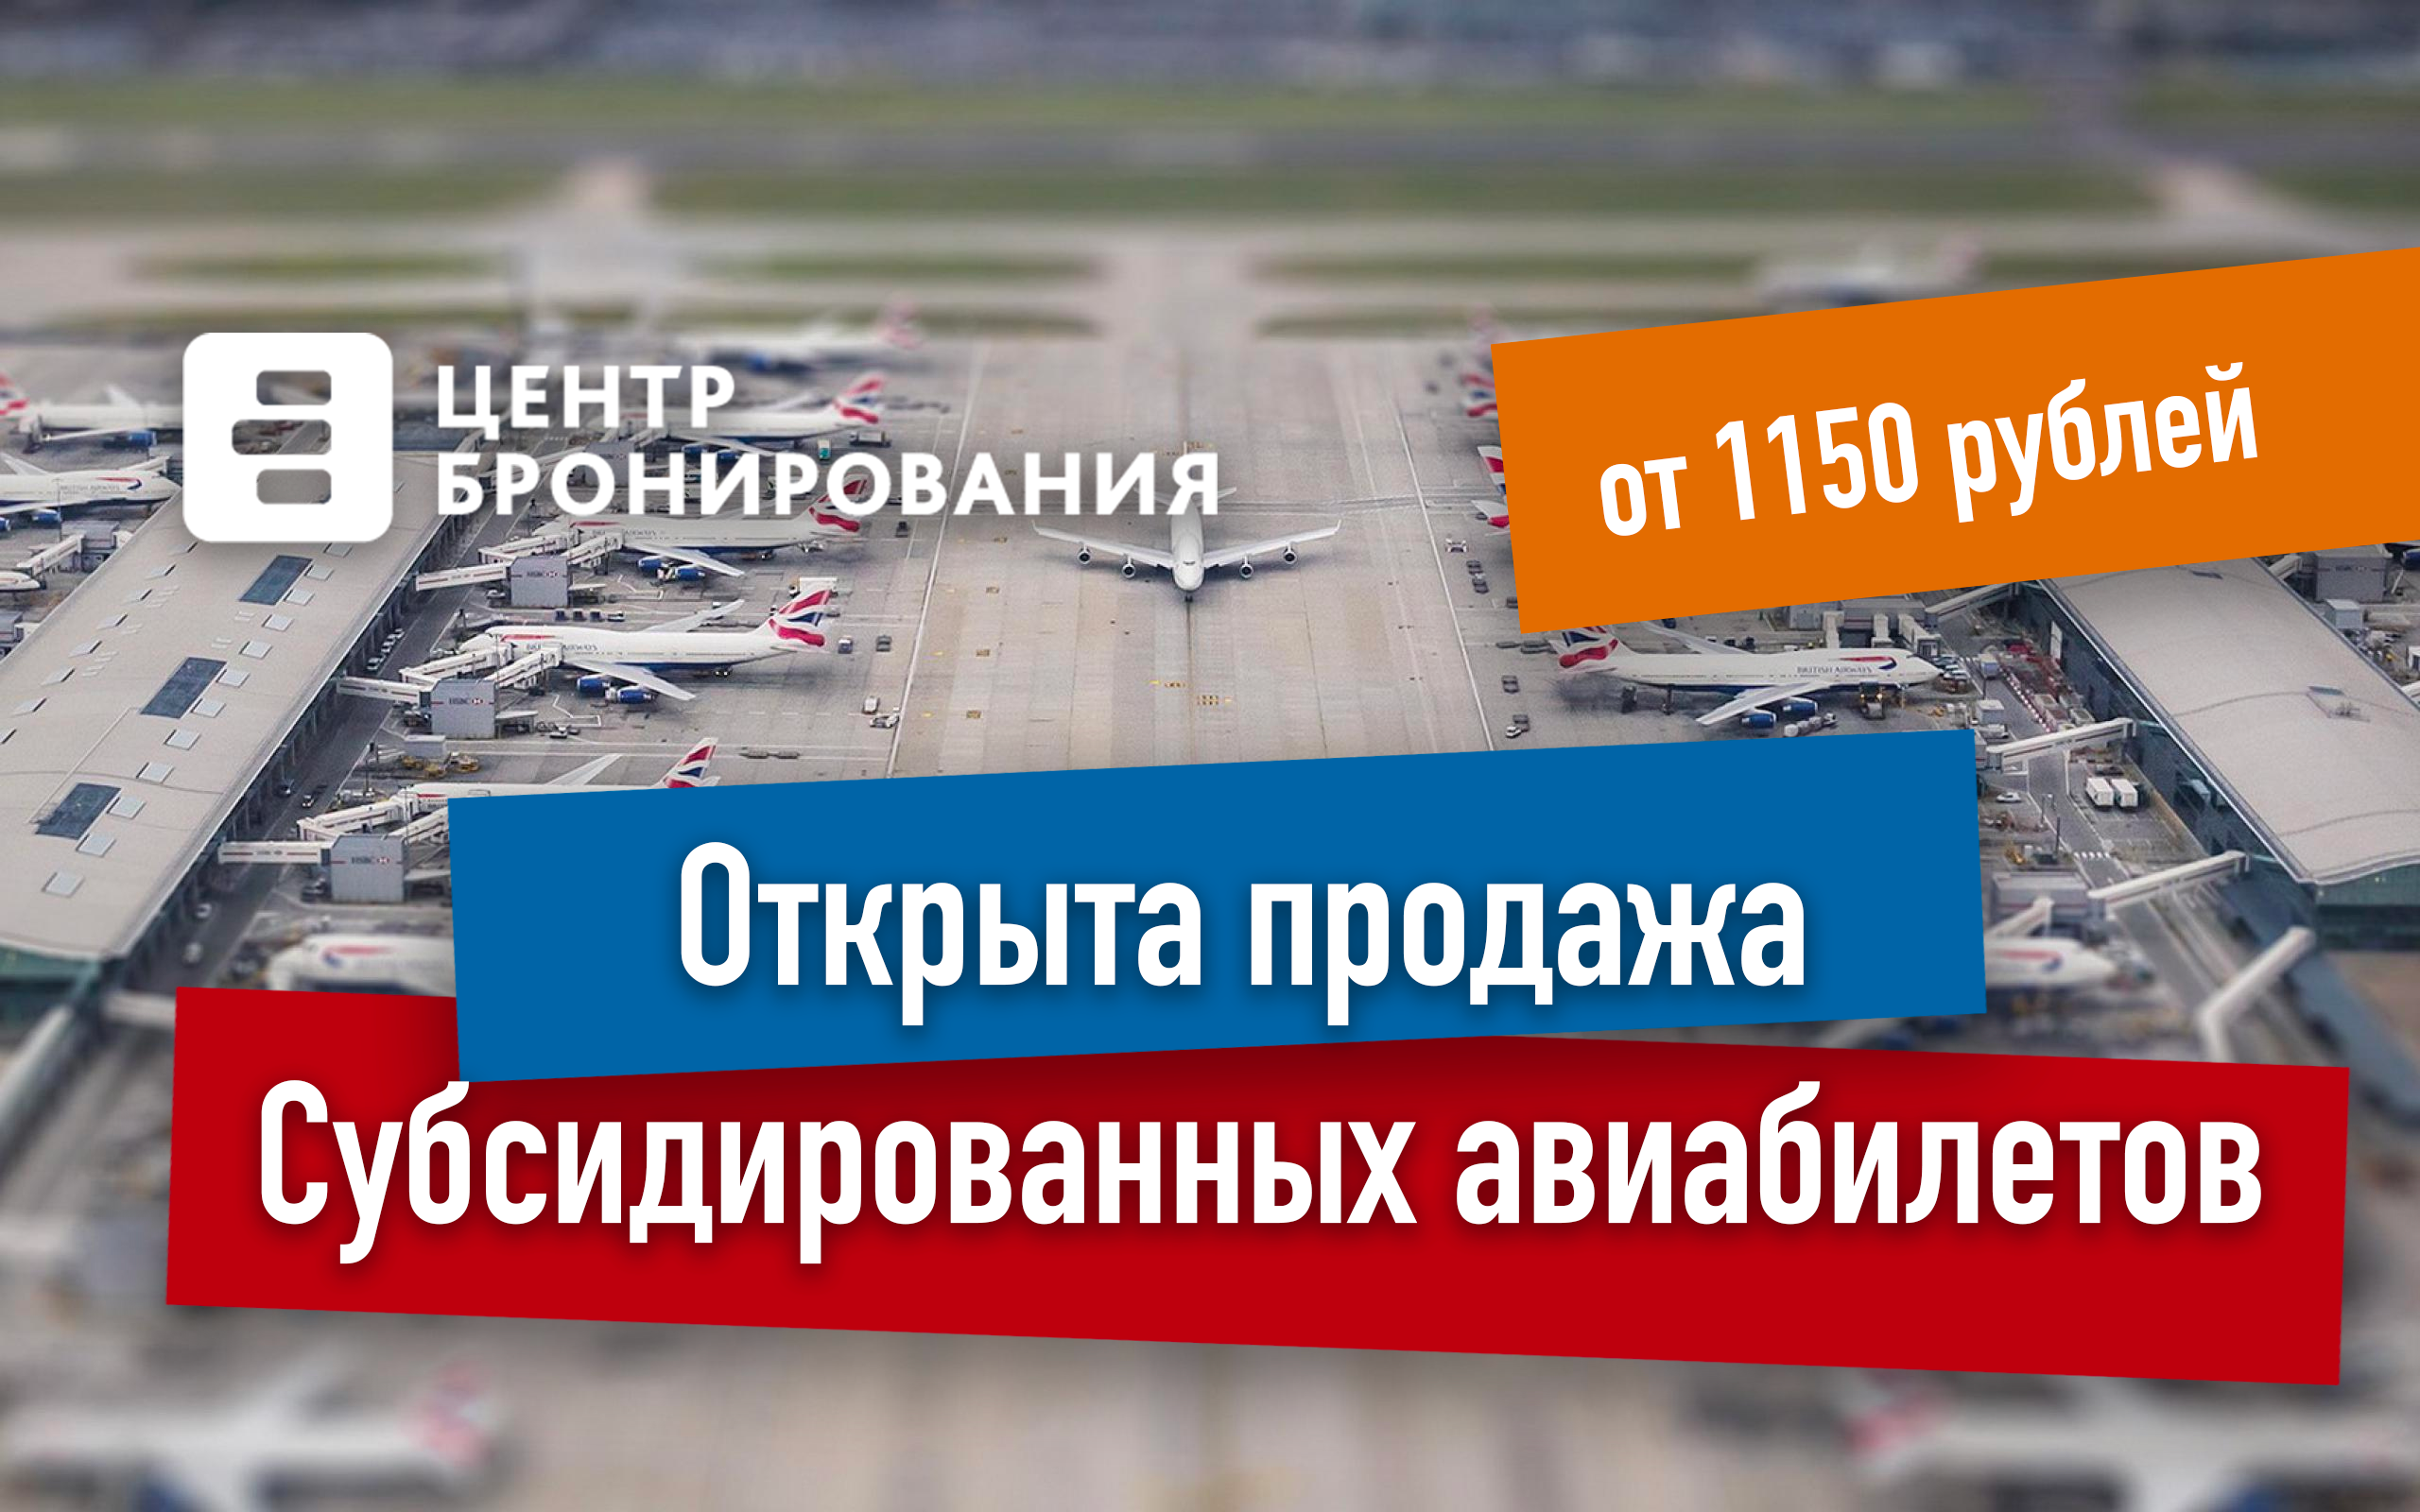 Покупка субсидированных билетов. Субсидирование авиаперевозок. Субсидированные авиабилеты. Субсидированные авиабилеты для пенсионеров. Aeroflot субсидированные.